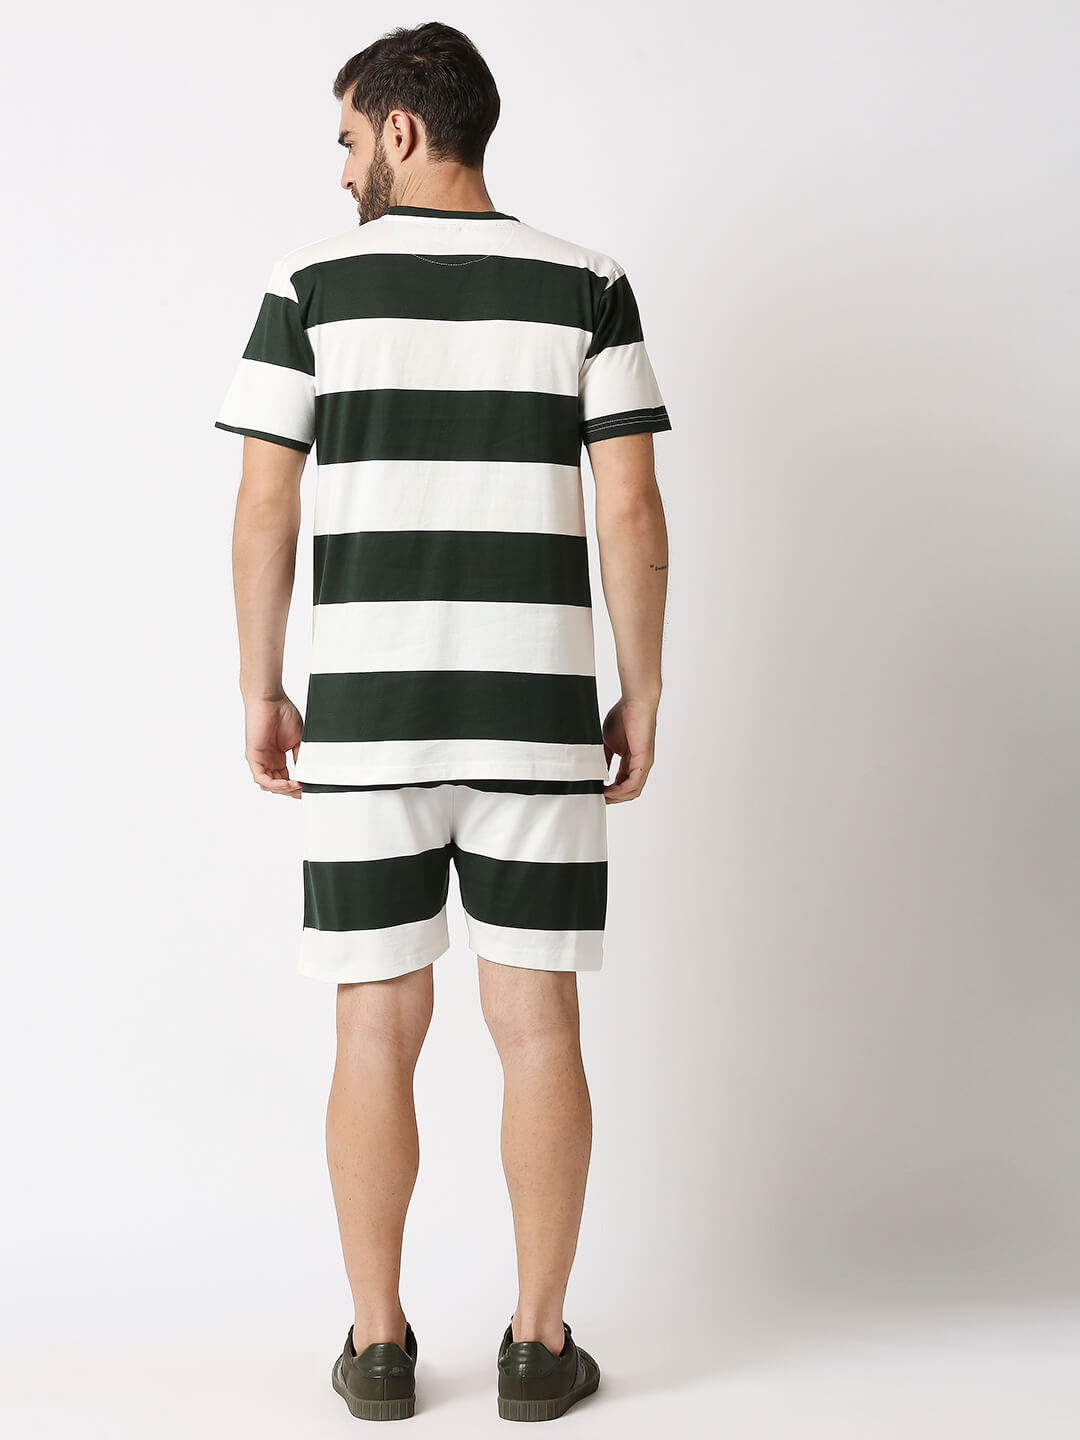 The Manaca Men Stripe Tee with Shorts - Green & White